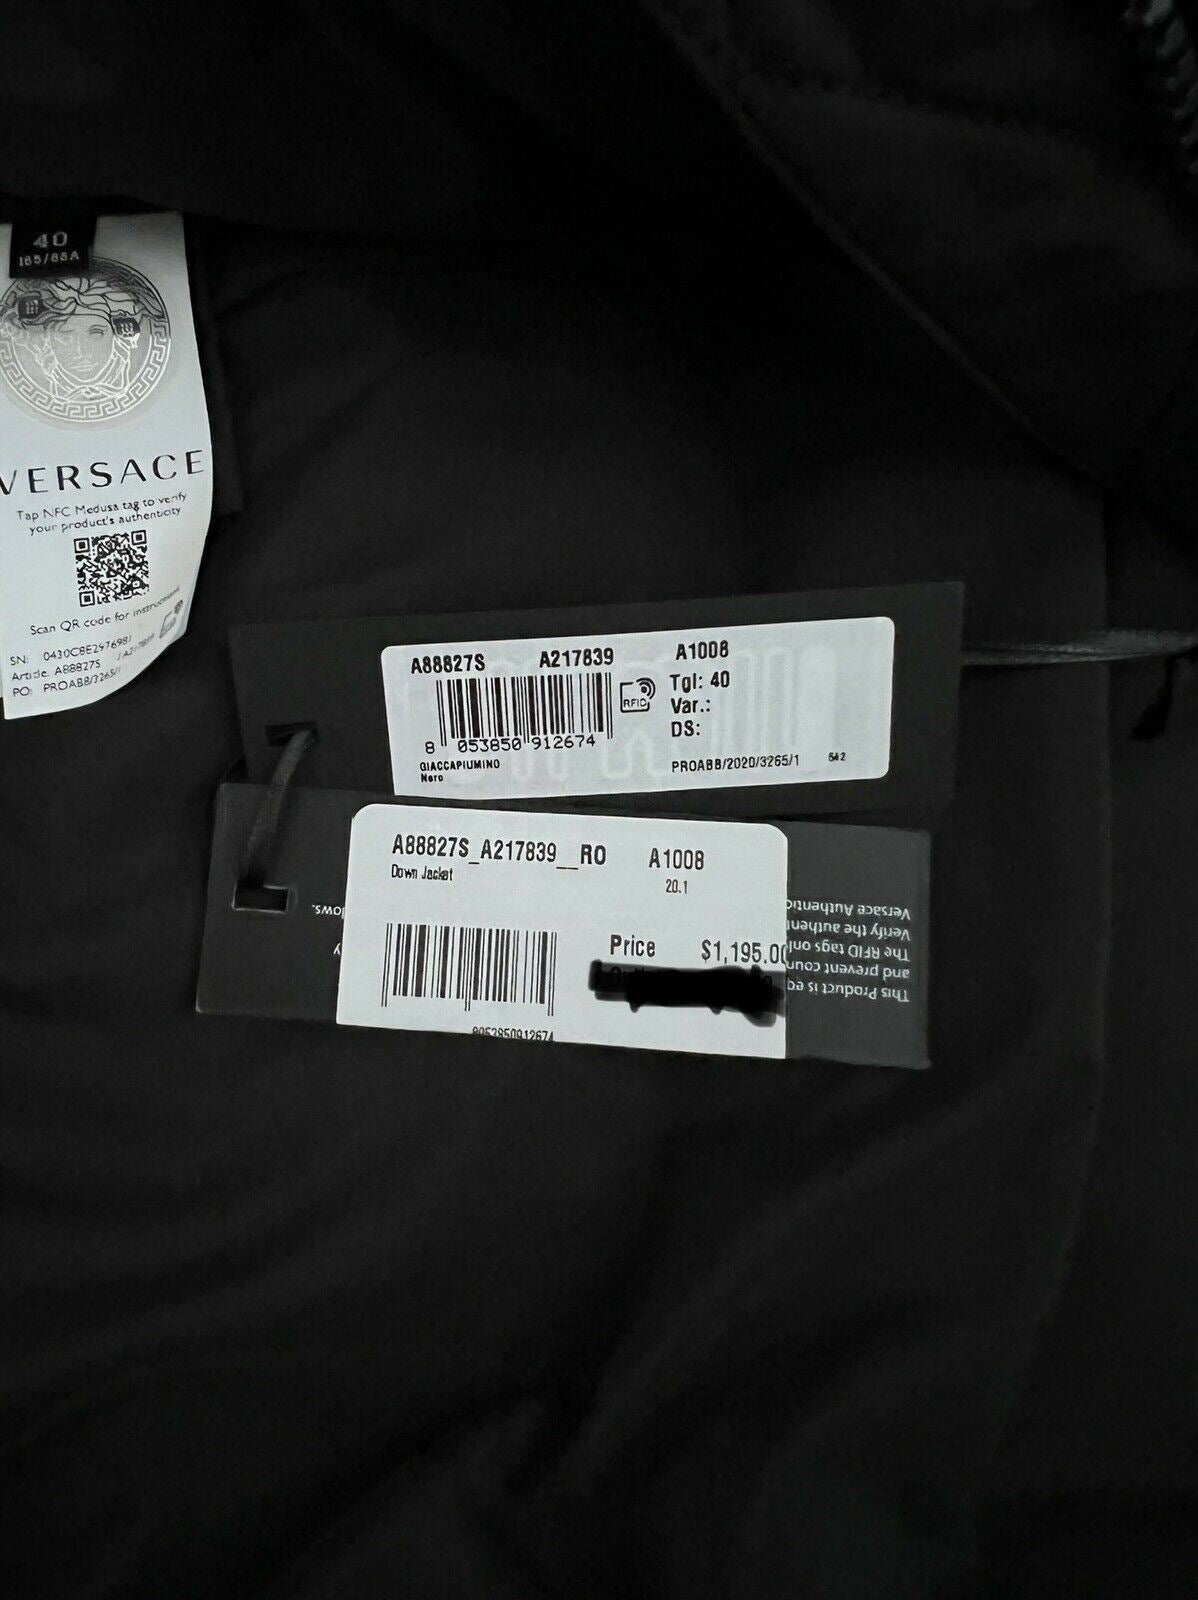 NWT 1195 $ Versace Damen-Daunenparkajacke in Schwarz 4 US (40 Euro) A88779S Italien 